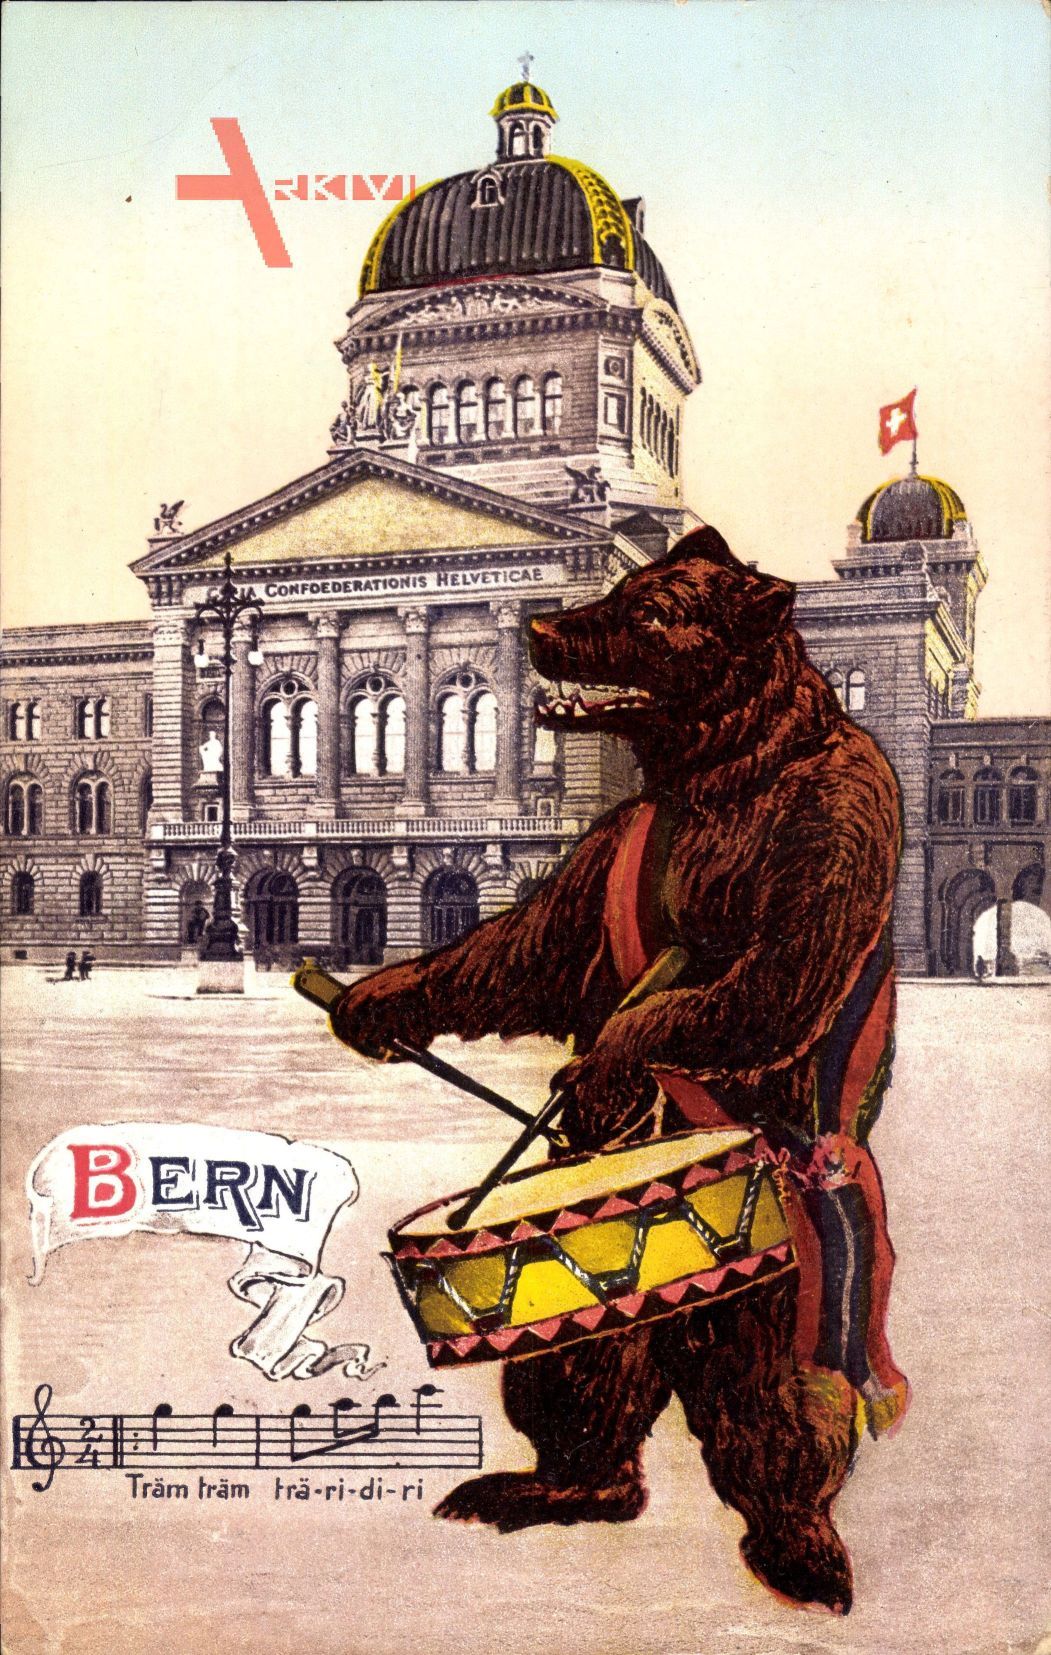 Lied Bern Stadt Schweiz, Bär mit Trommel, Träm träm, Bärengraben